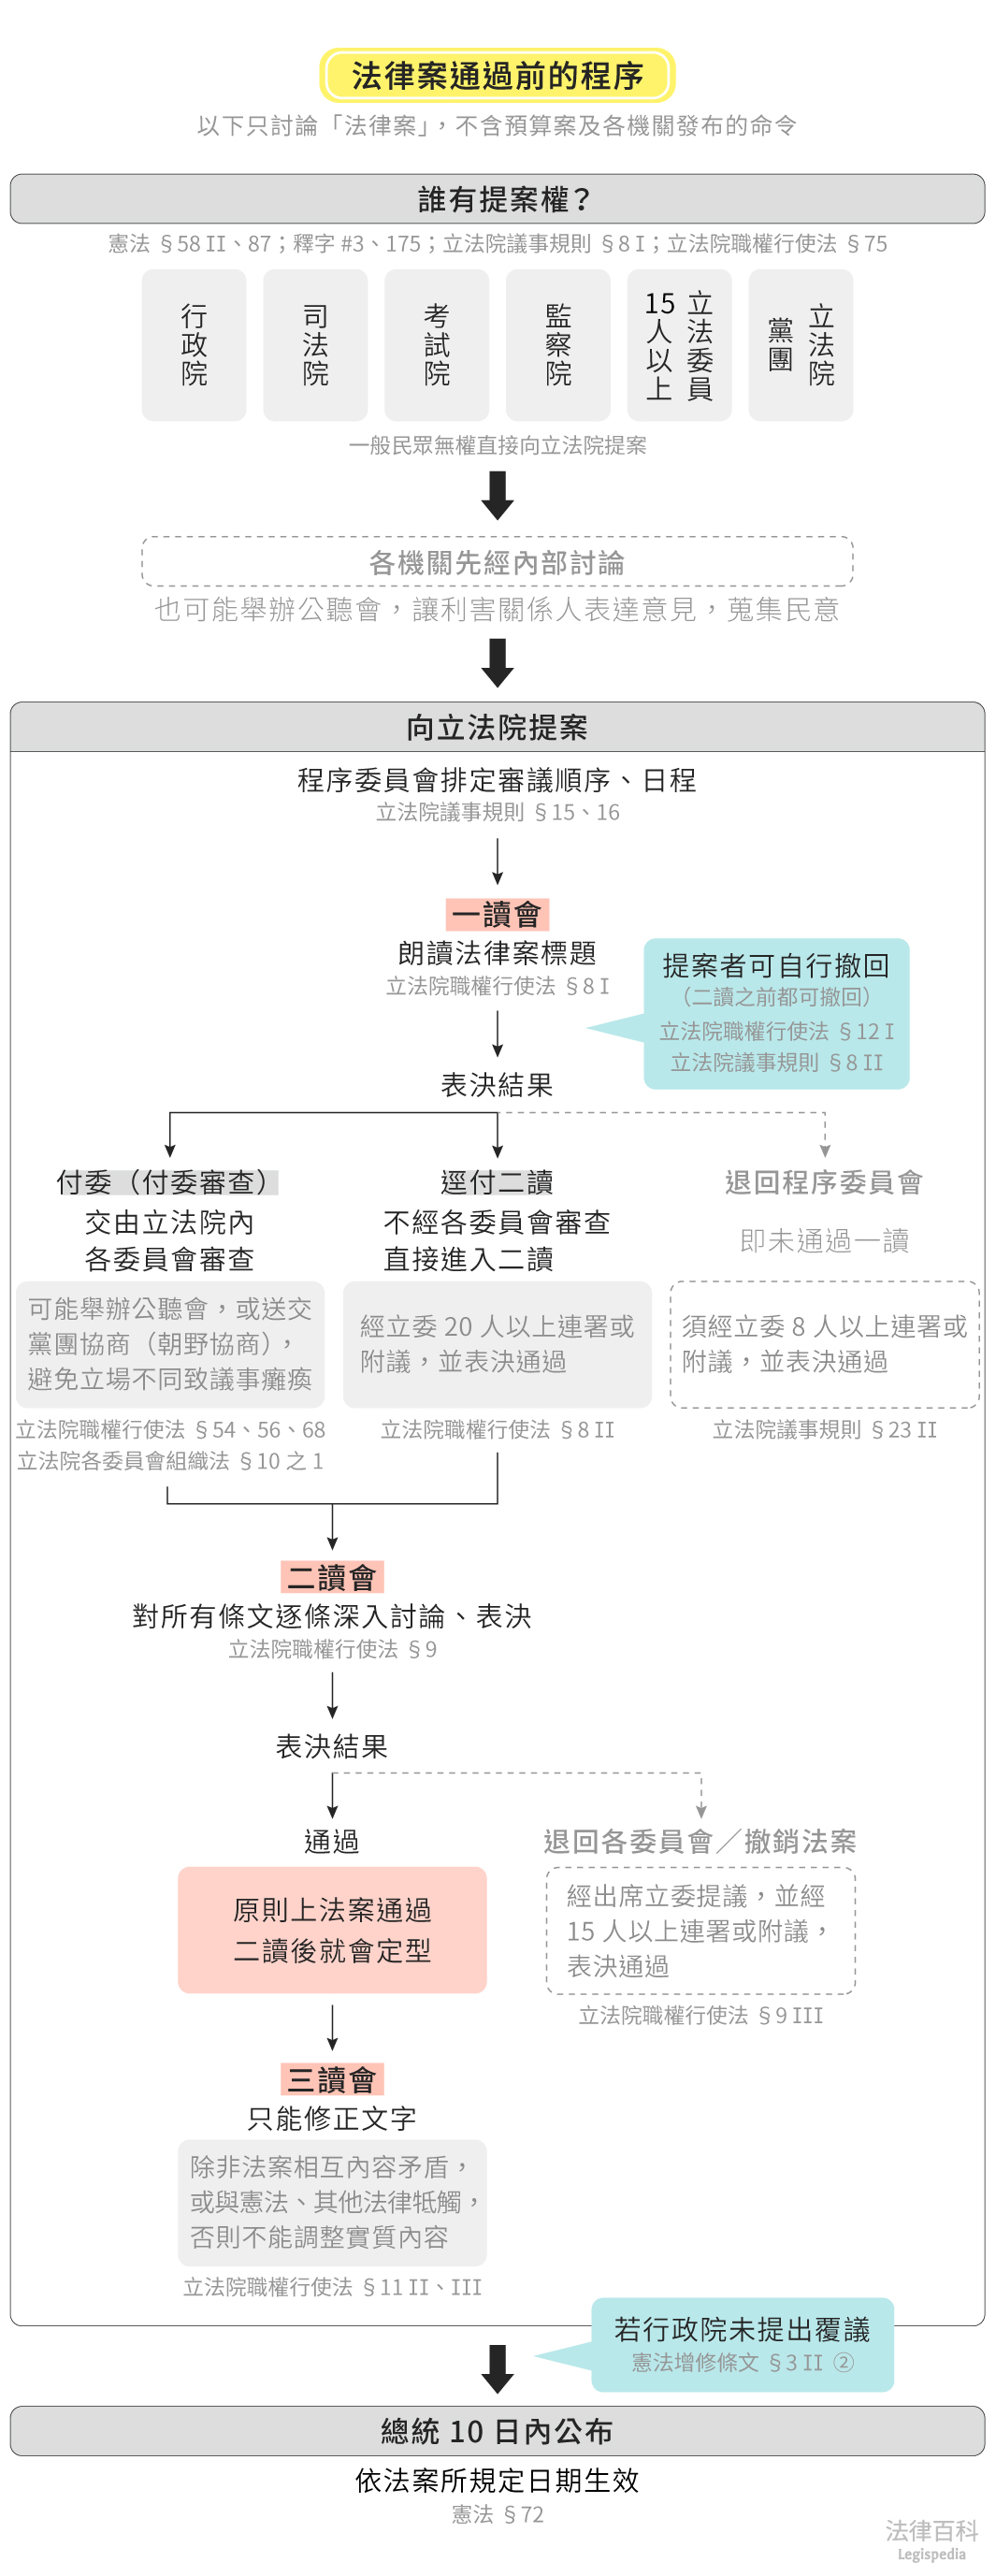 圖1　法律案通過前的程序||資料來源：黃蓮瑛、陳婉榕　/　繪圖：Yen